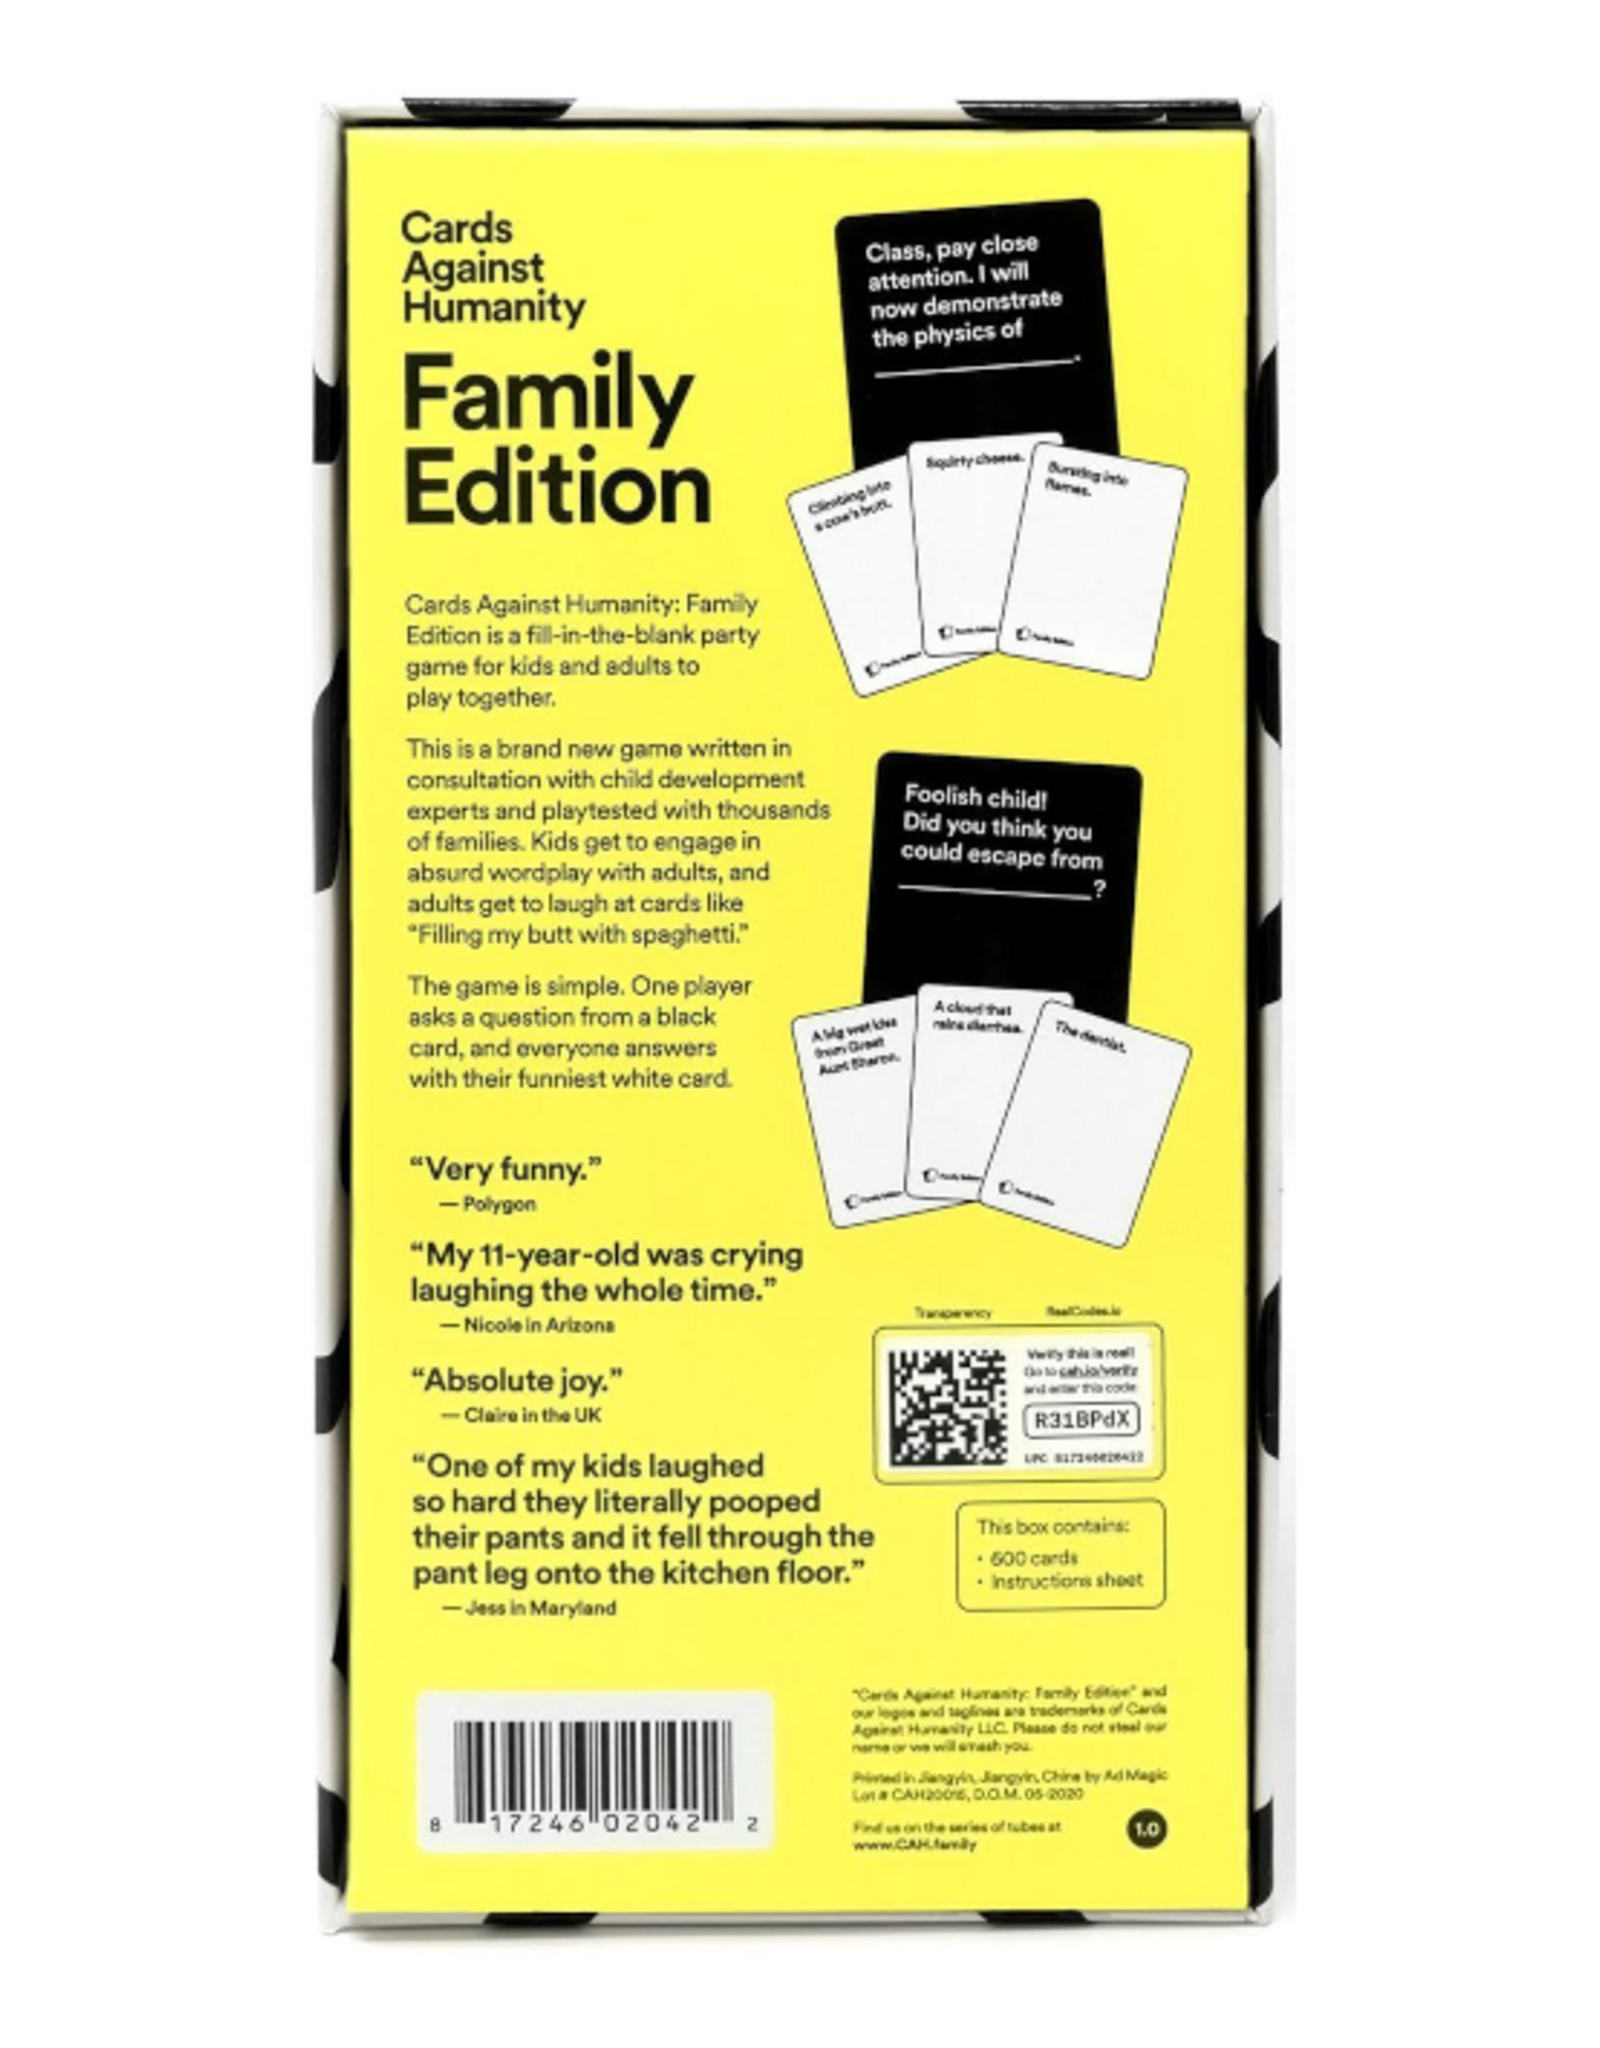 Cards Against Humanity - Cards Against Humanity: Family Edition